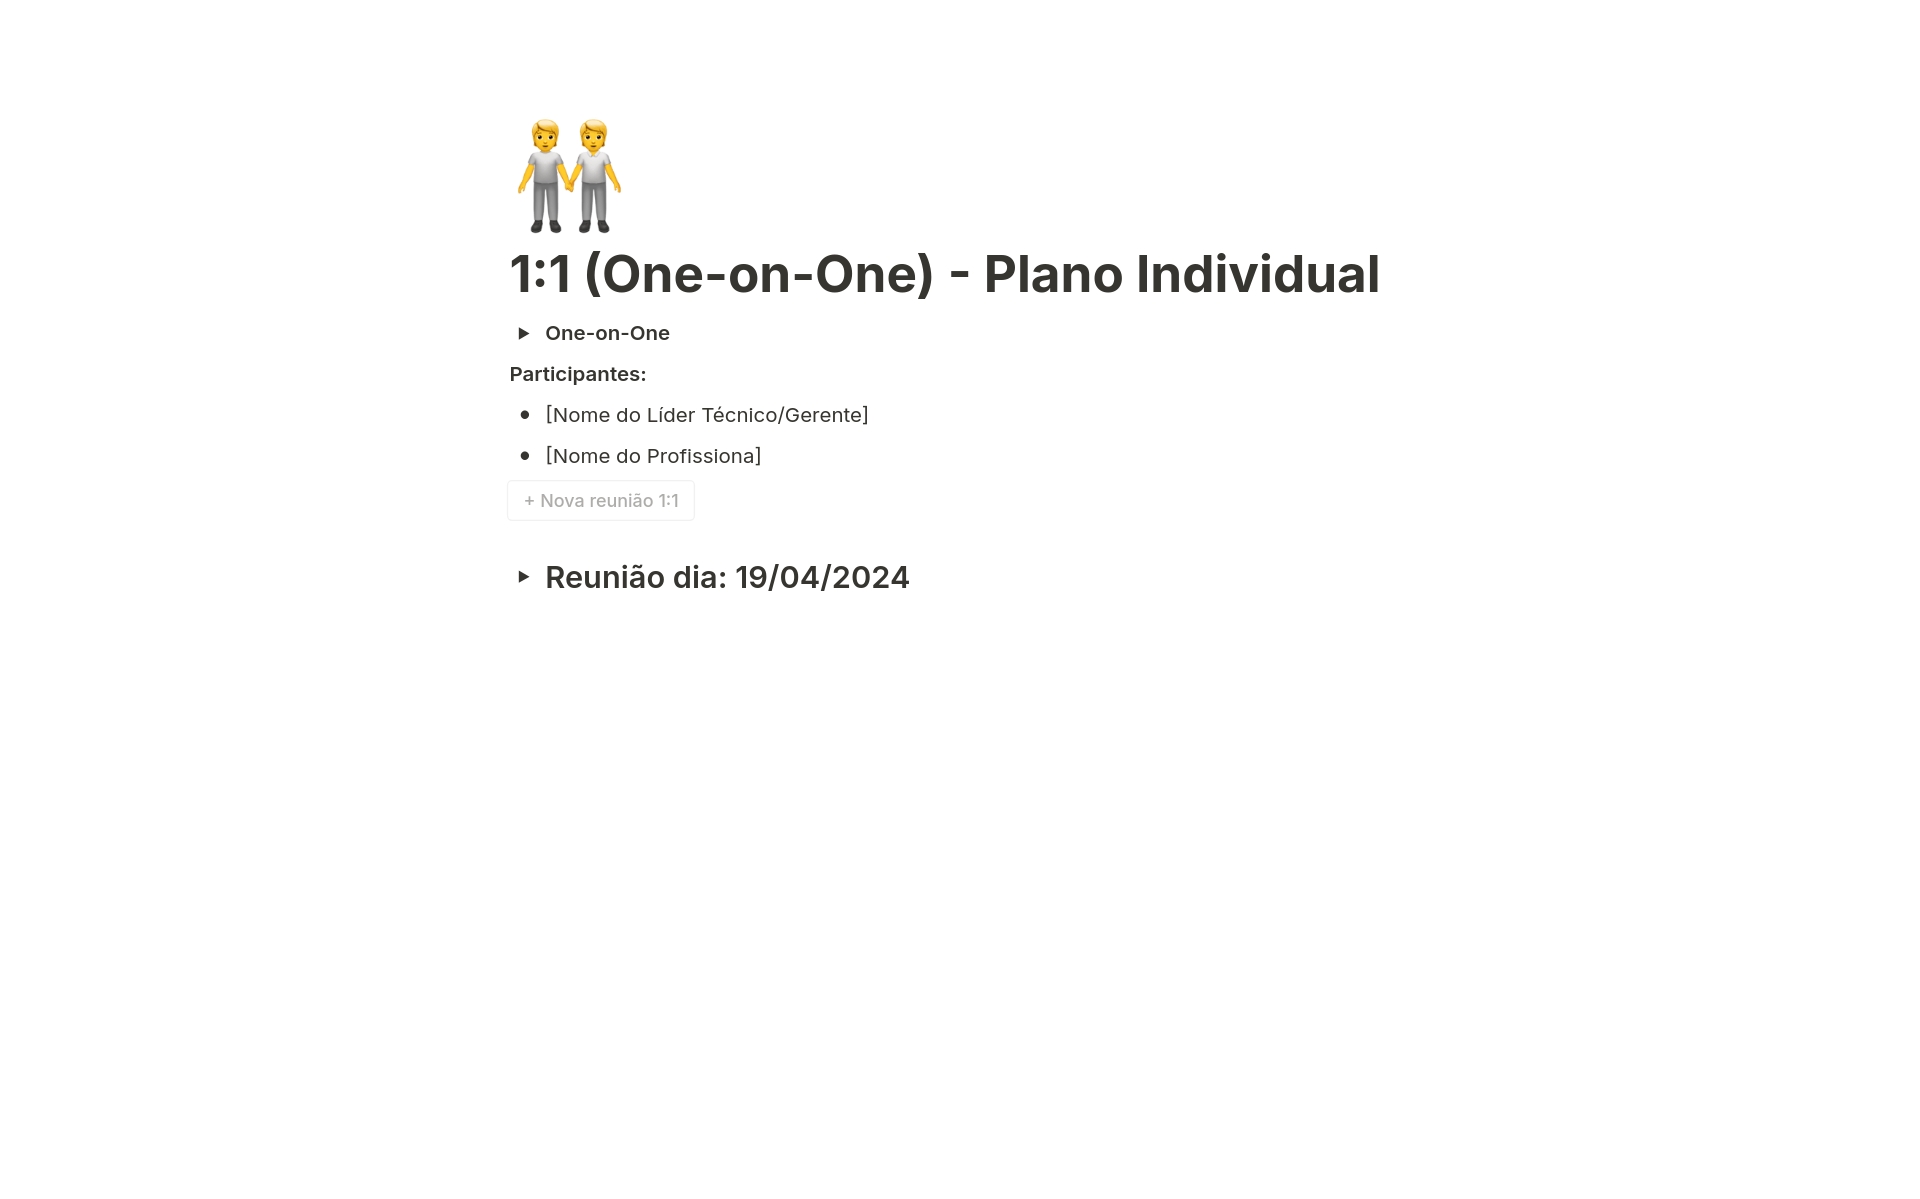 En förhandsgranskning av mallen för 1:1 (One-on-One) - Plano Individual